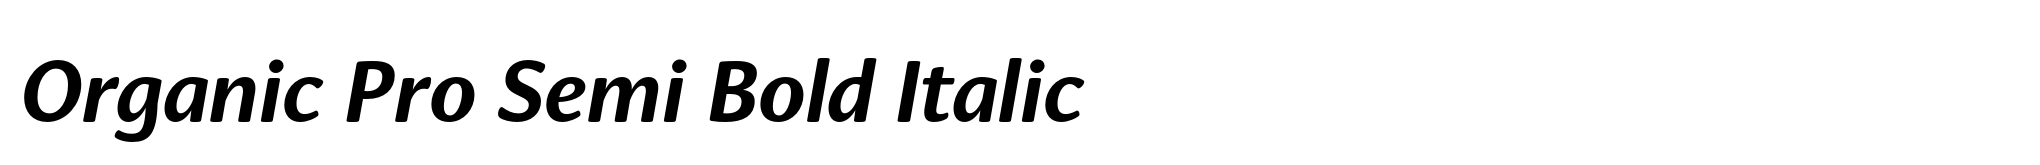 Organic Pro Semi Bold Italic image